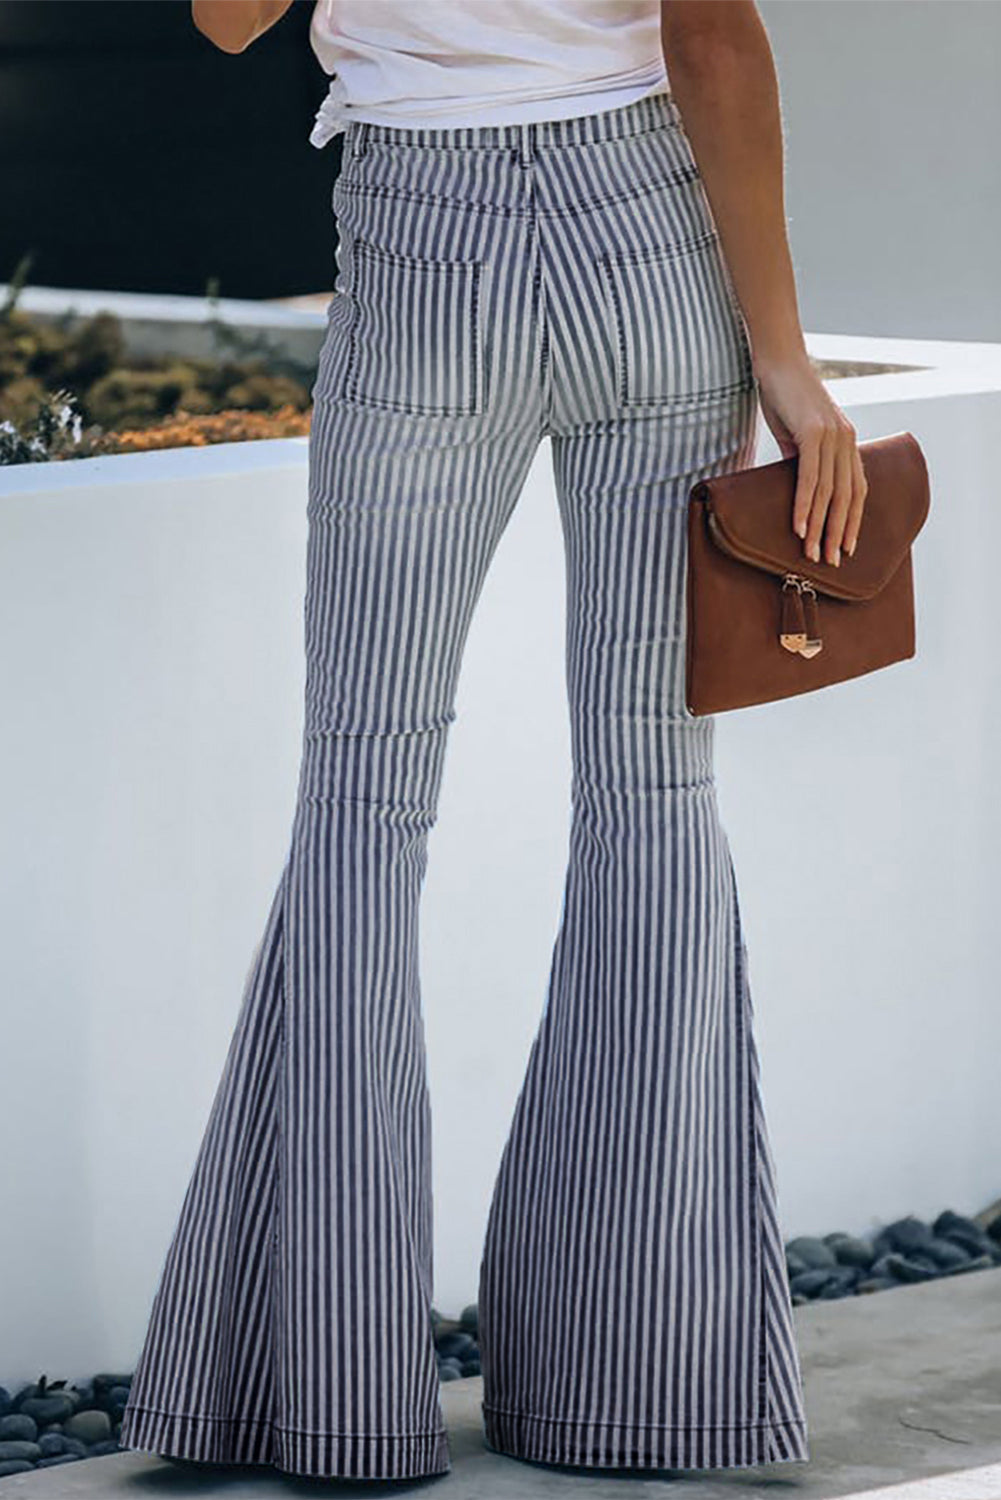 Pocketed Striped Bell Bottom Denim Pants Jeans JT's Designer Fashion